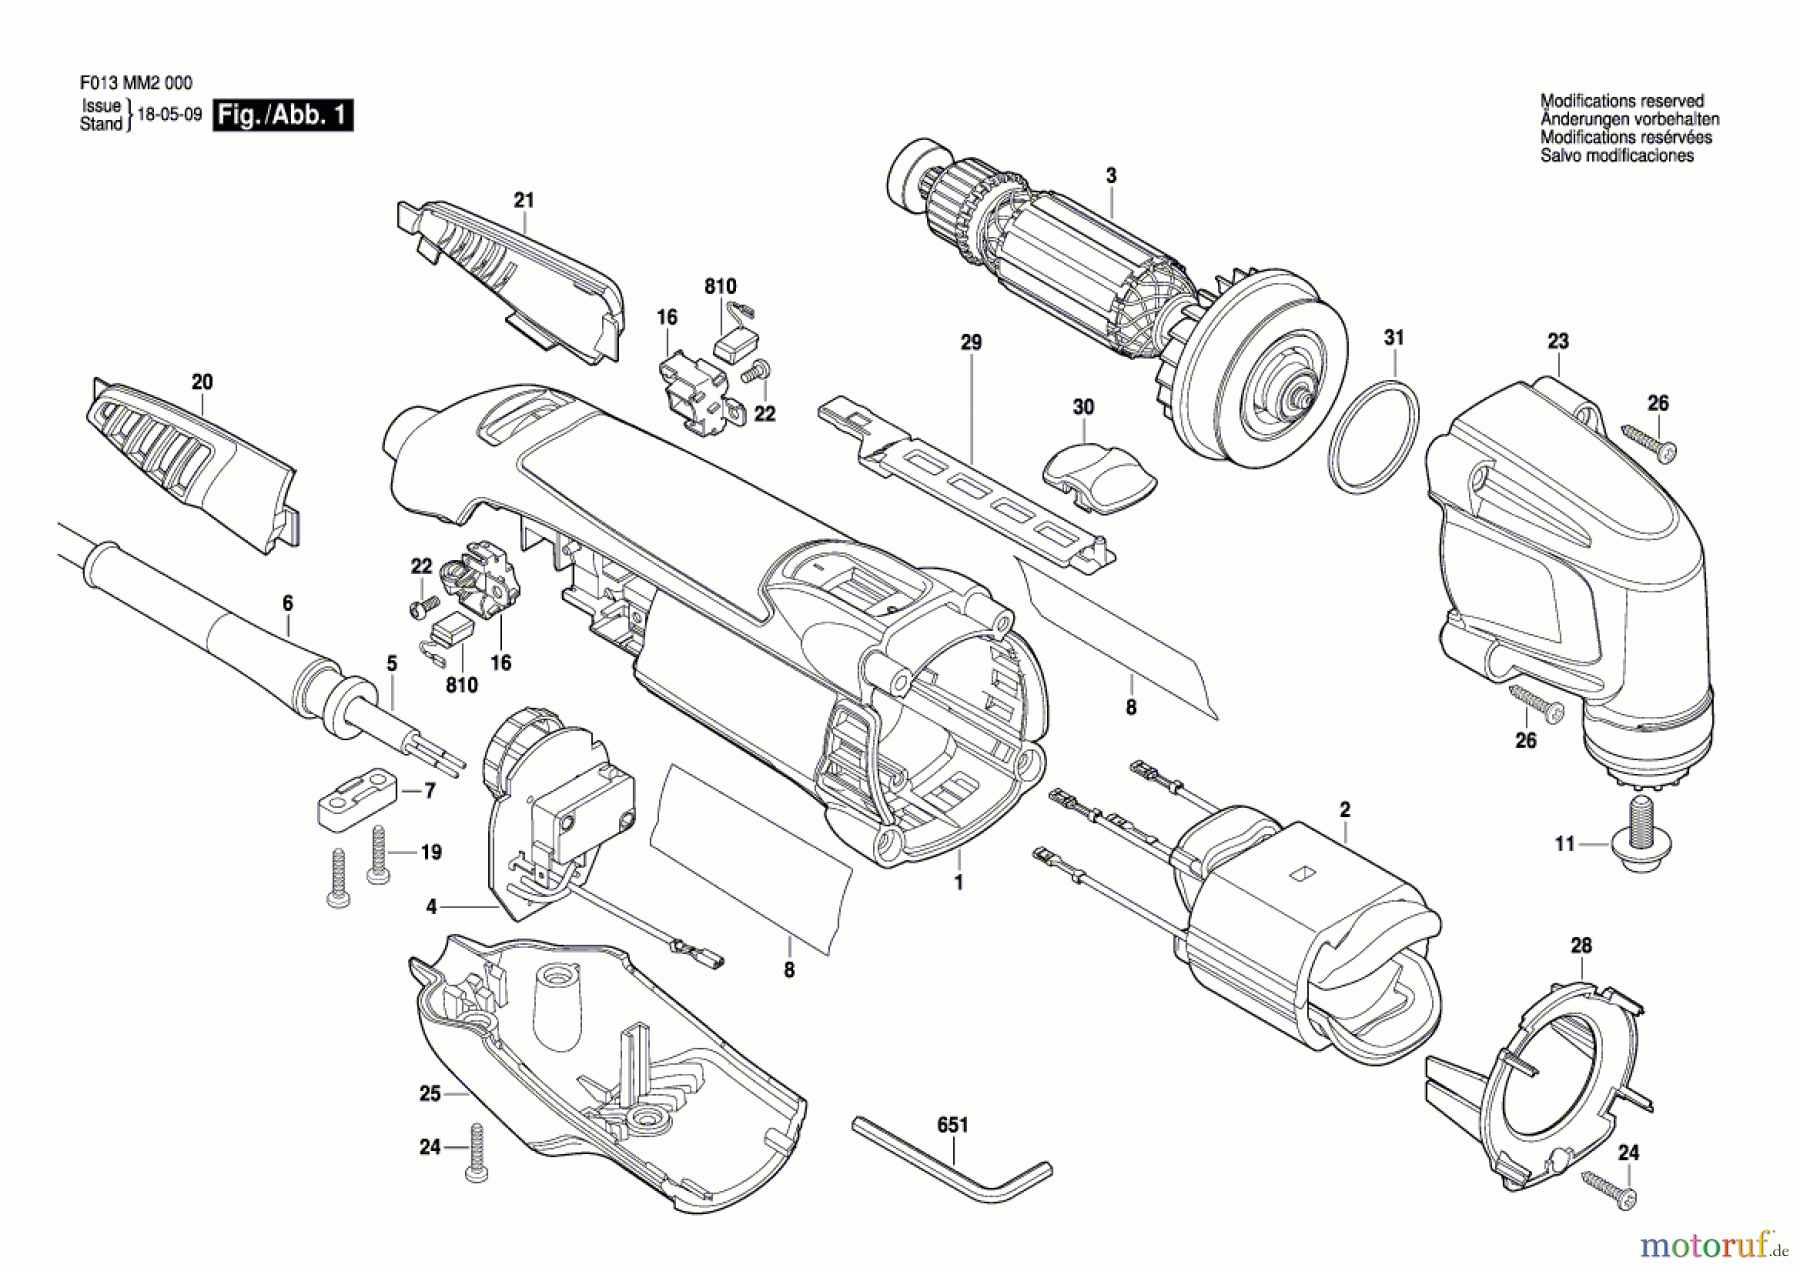  Bosch Werkzeug Multifunktionswerkzeug MM20 Seite 1